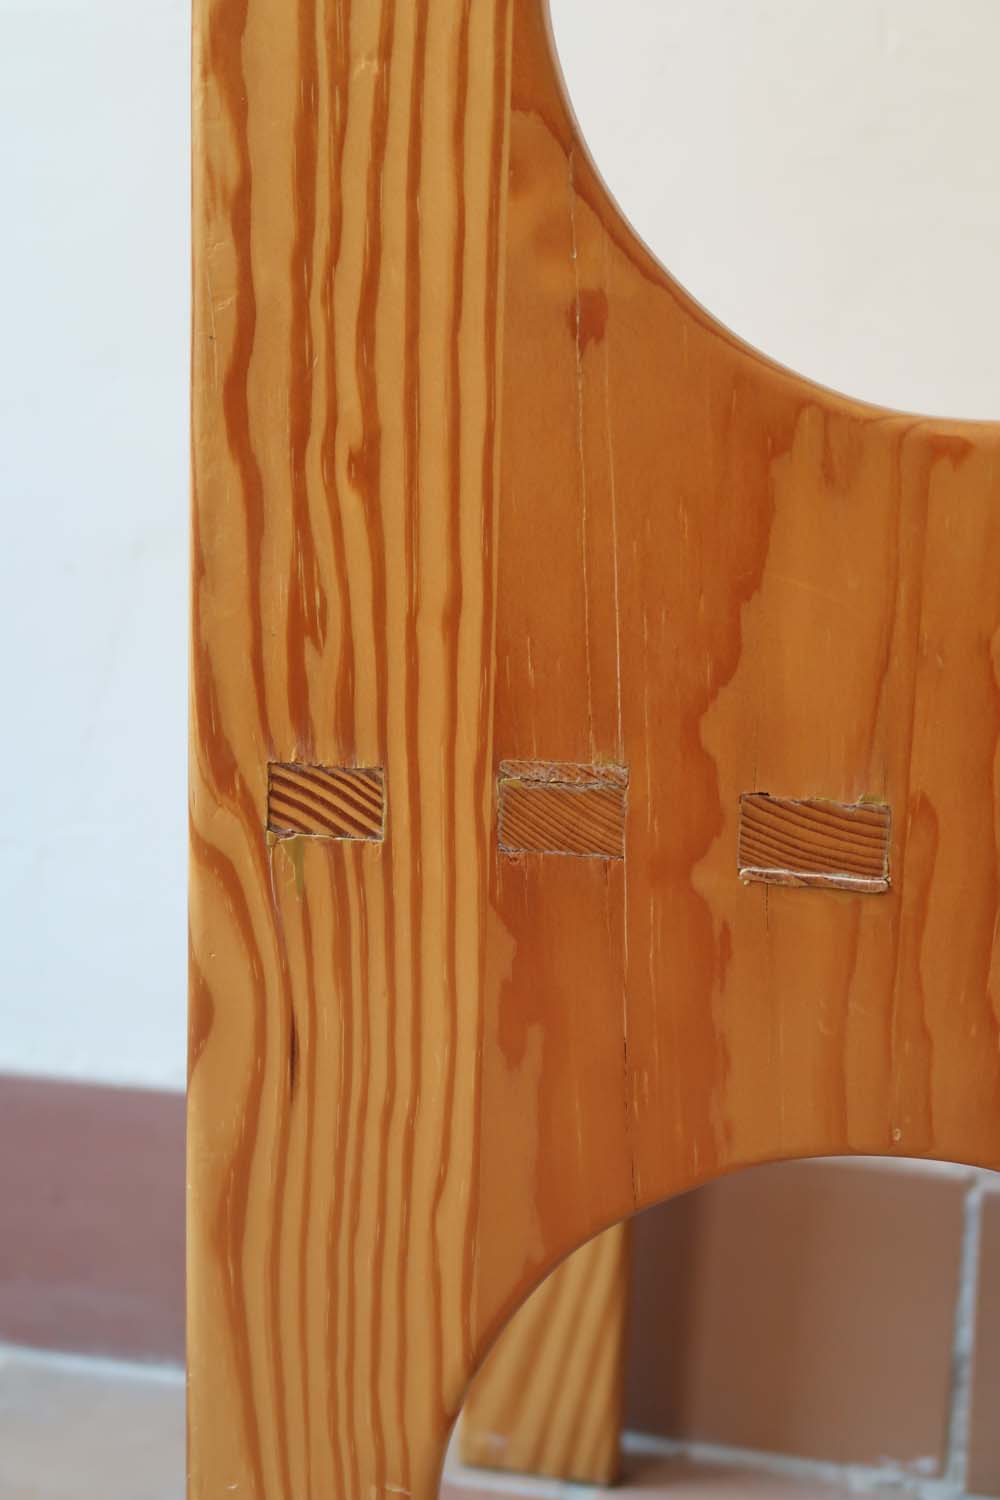 chaise enfant bois vintage pin rond design moderniste brutaliste